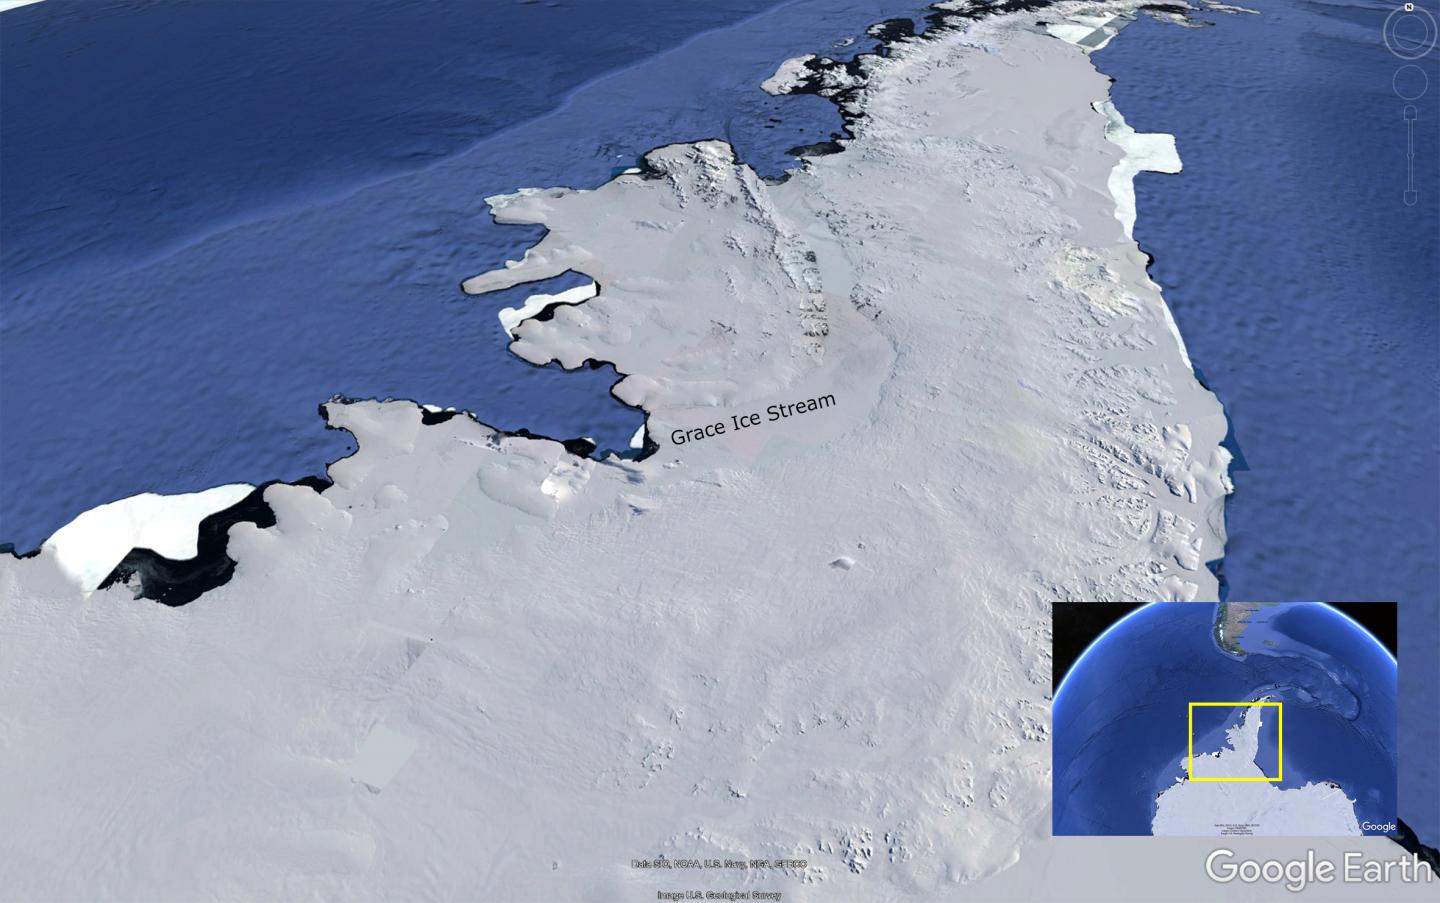 Antarctic Glacier 